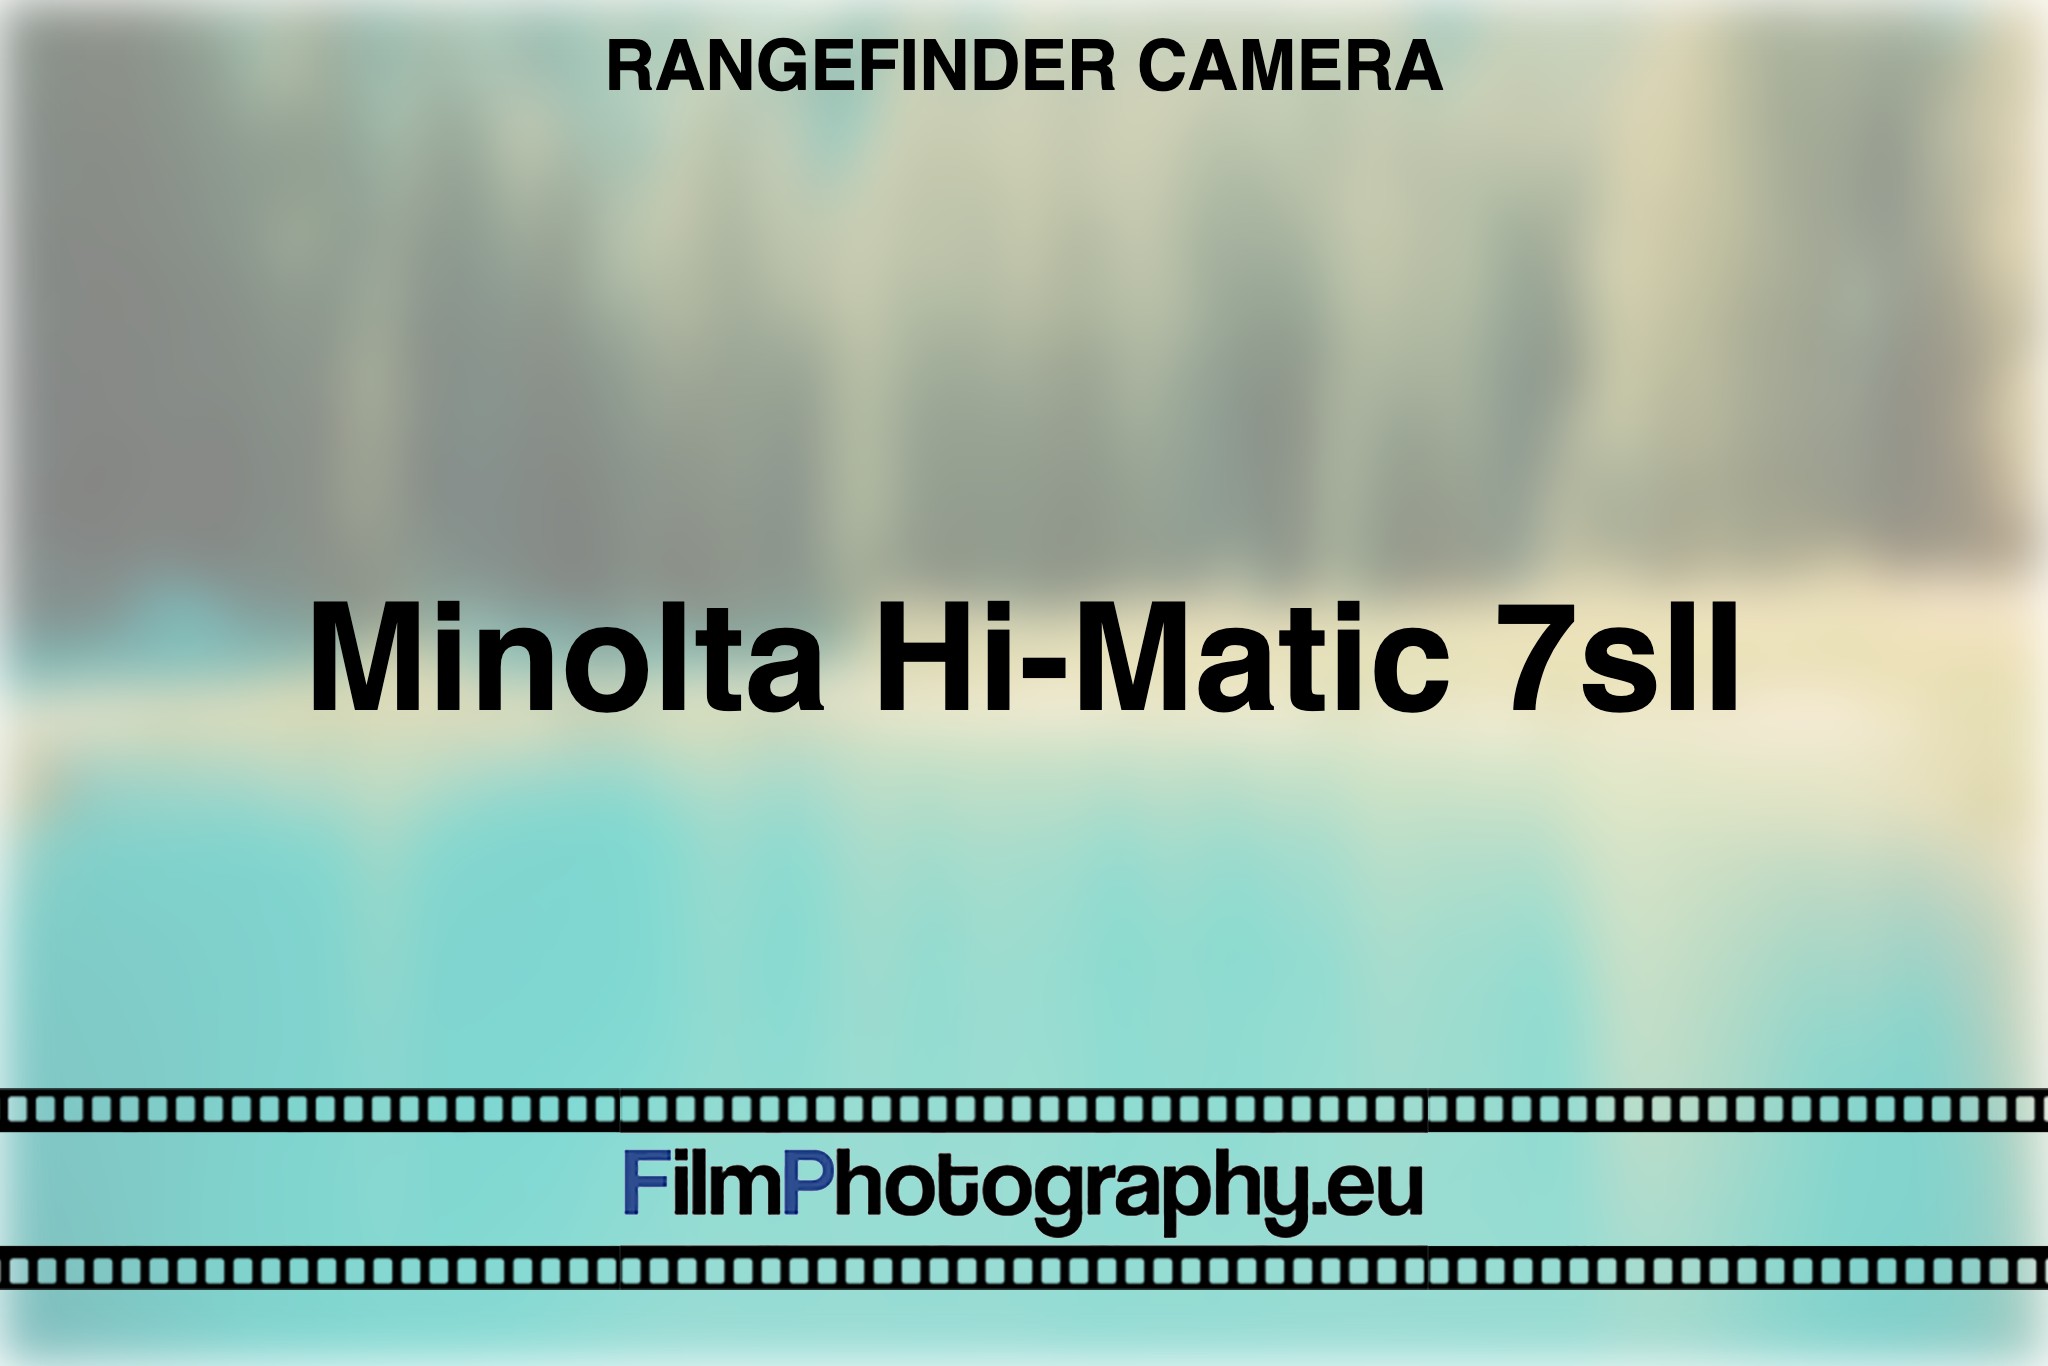 minolta-hi-matic-7sii-rangefinder-camera-bnv